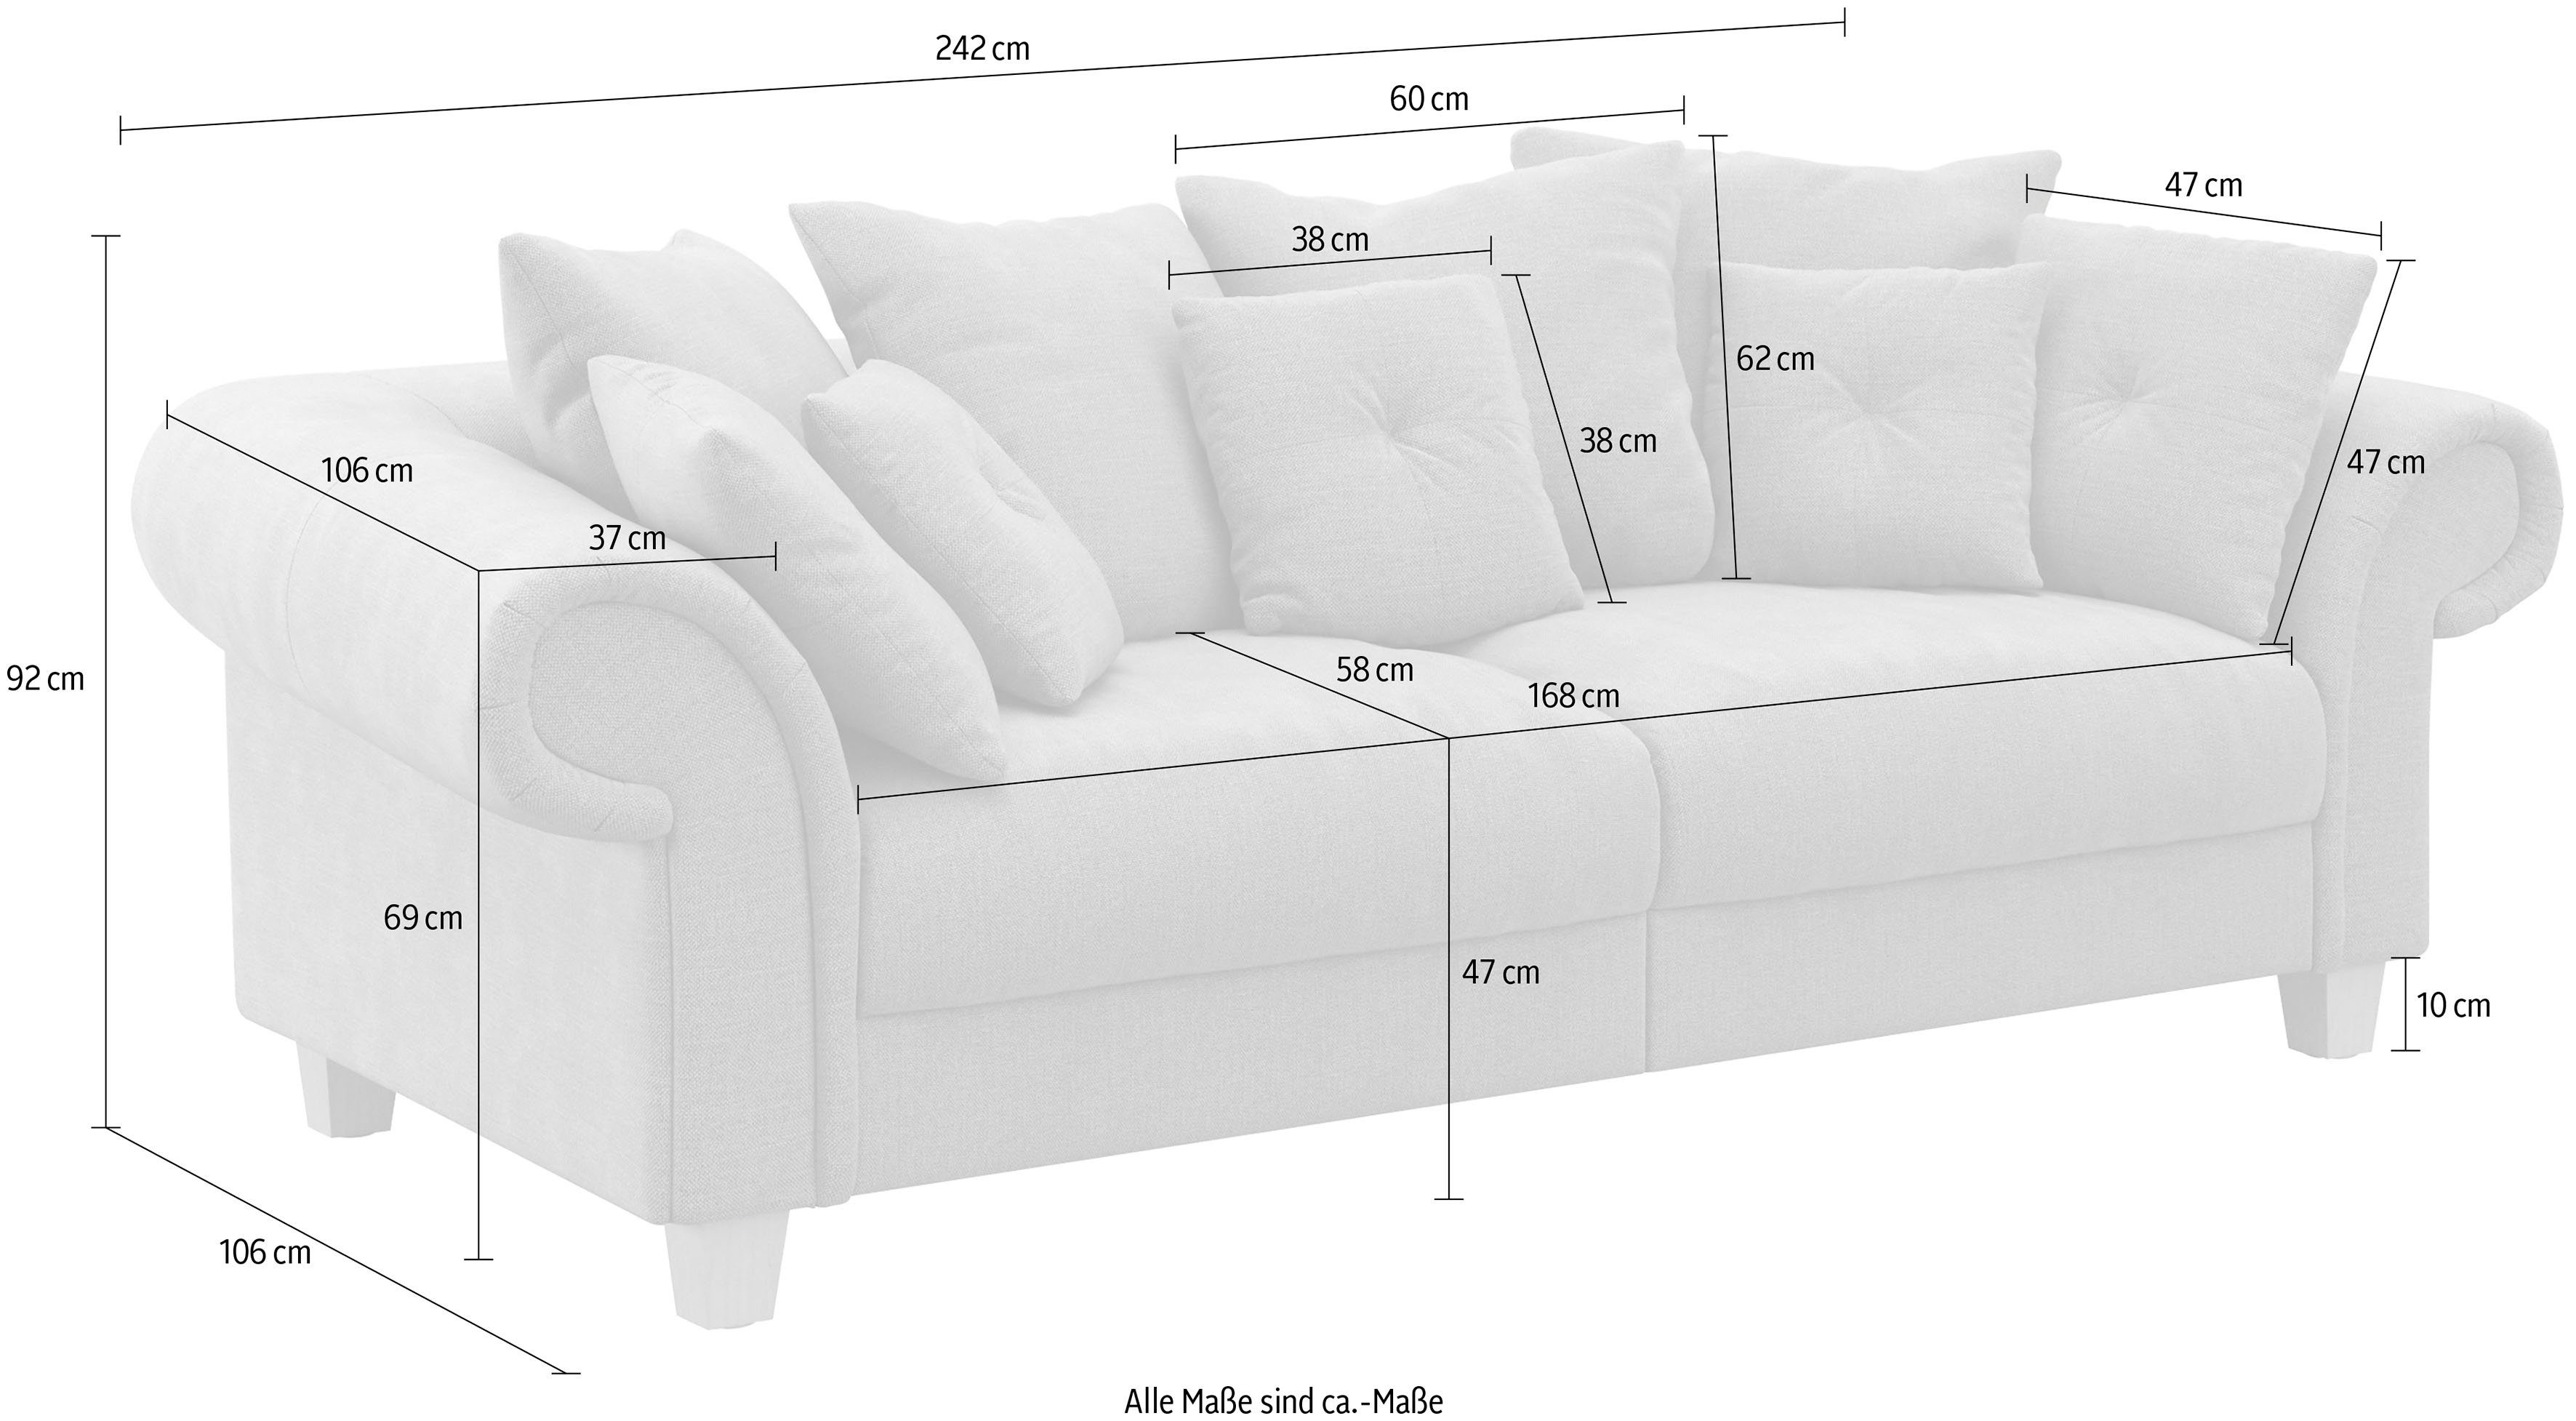 Home affaire Big-Sofa Queenie Kissen 2 zeitlosem Teile, Megasofa, mit weichem viele kuschelige Design, Sitzkomfort und